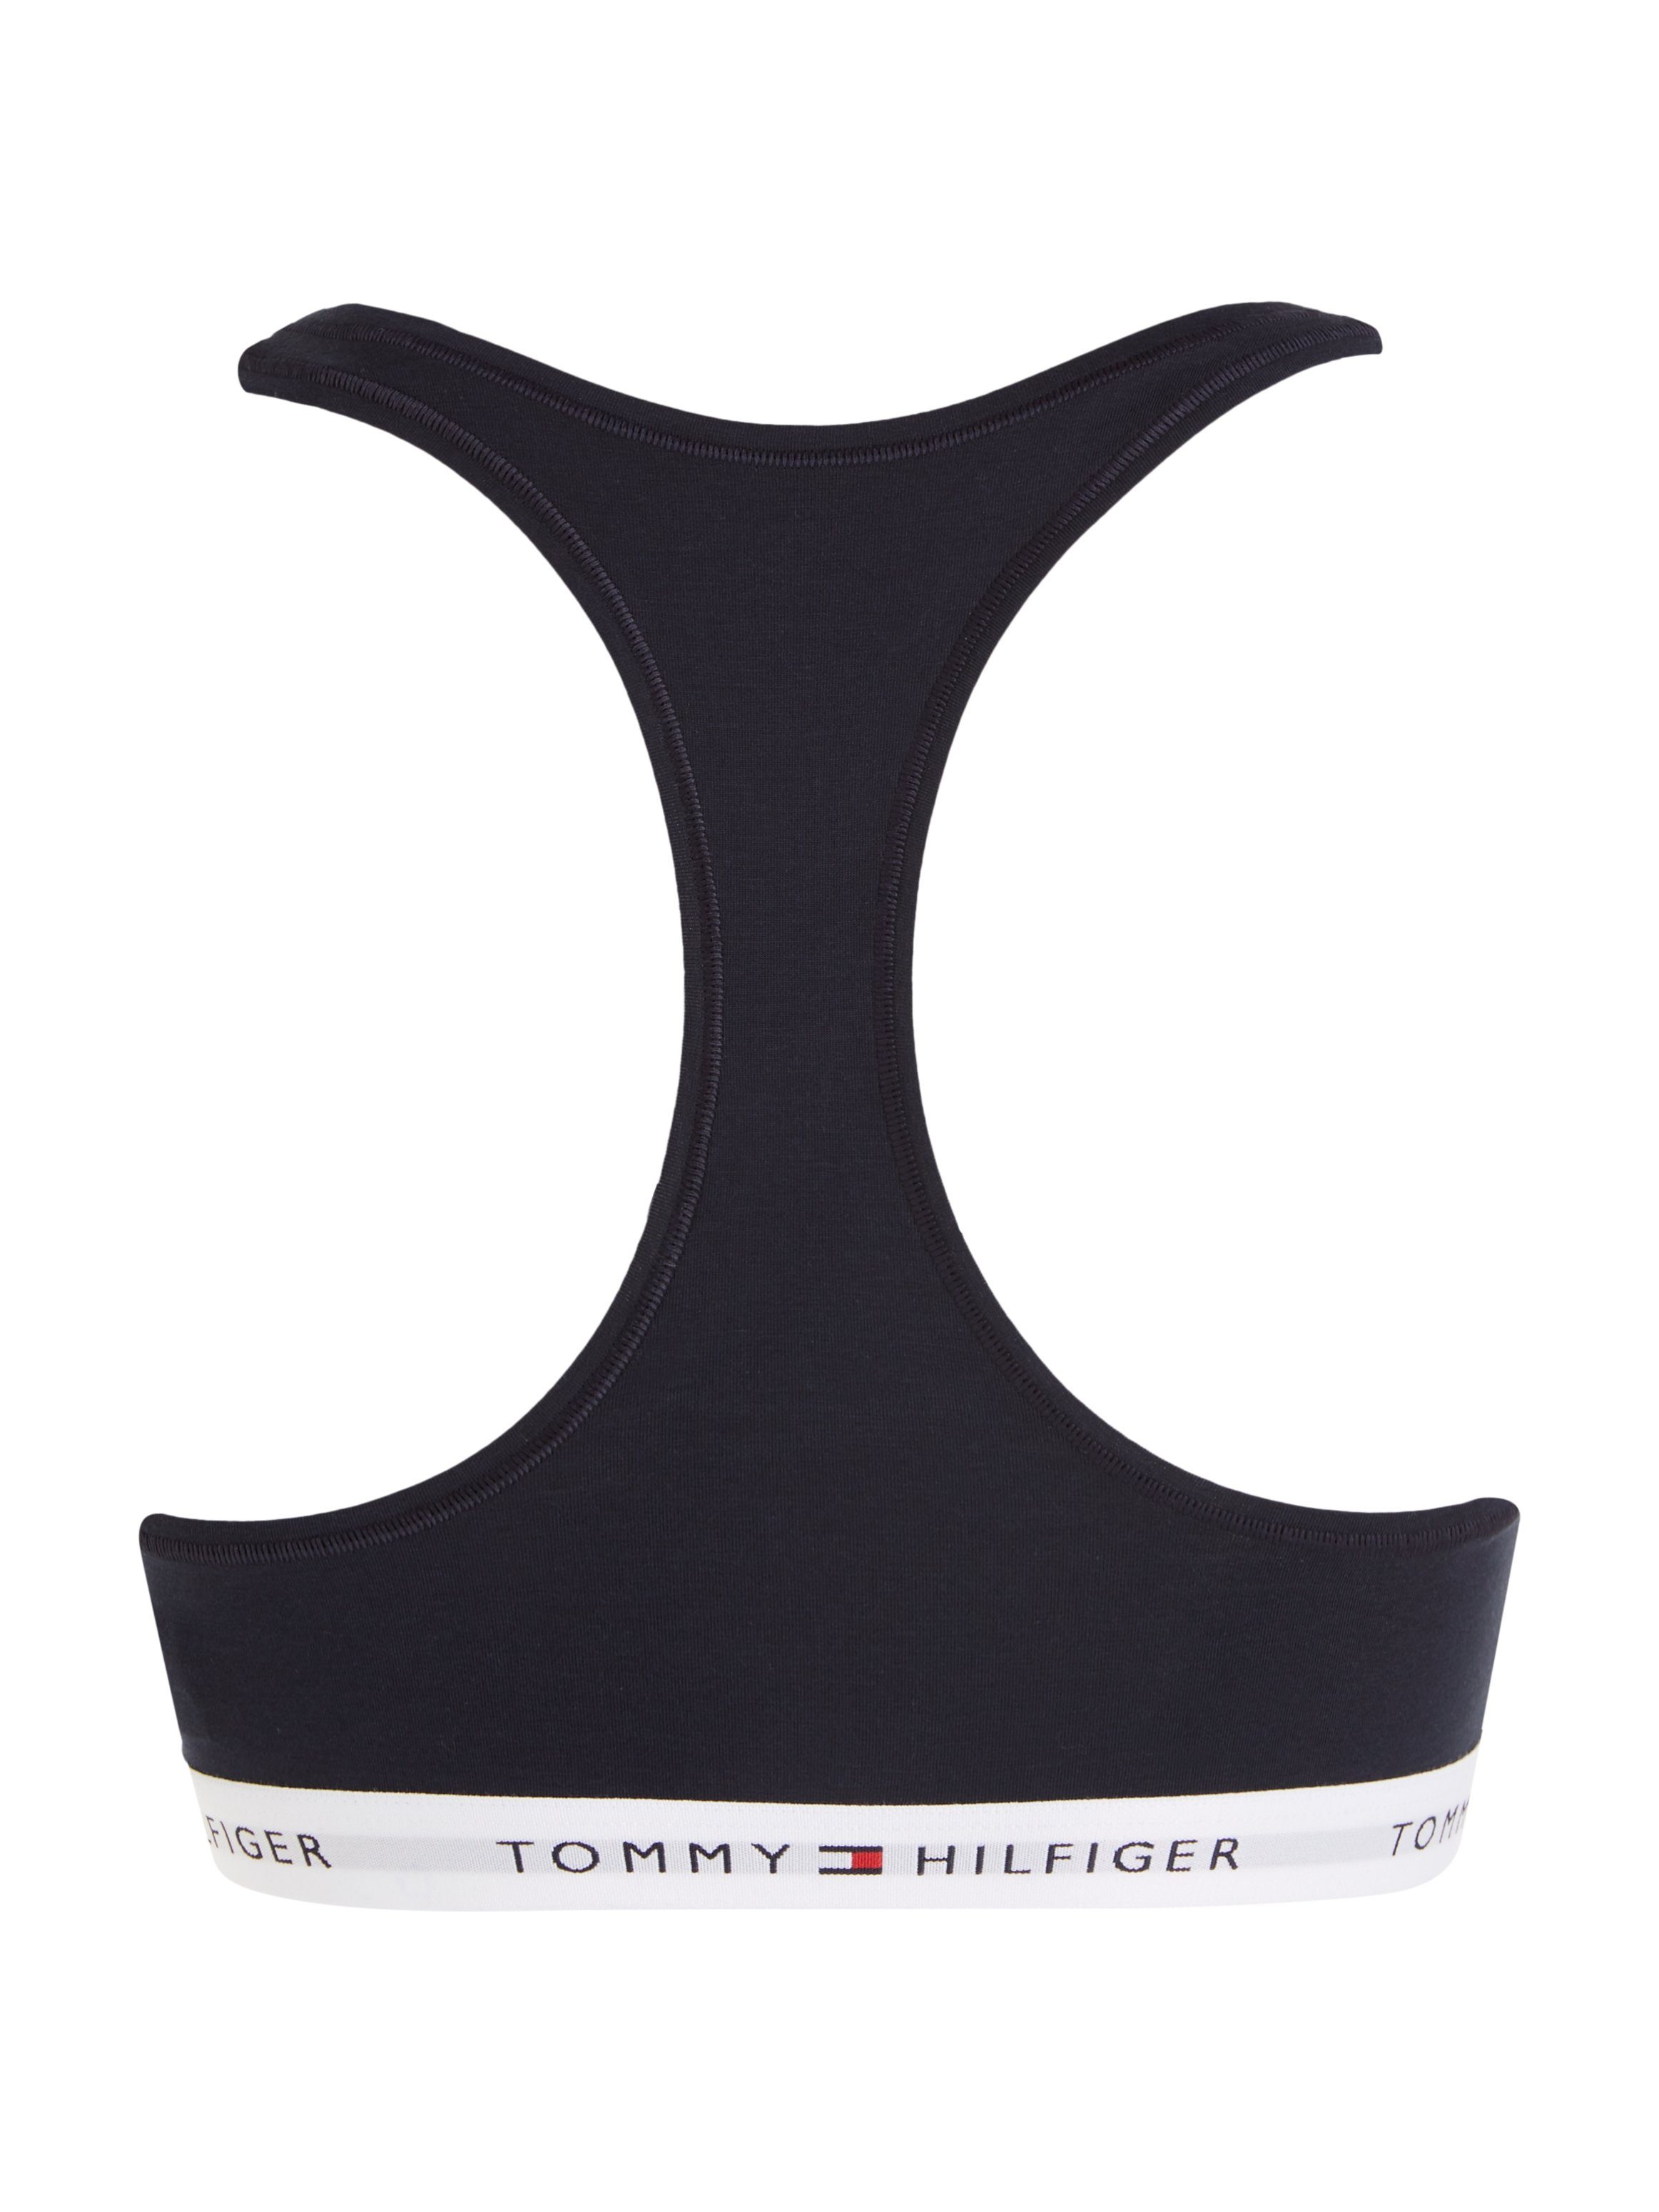 Hilfiger dem Tommy Unterbrustband Sport-Bustier Sky Hilfiger (dunkelblau) Underwear mit Tommy Schriftzügen auf Desert